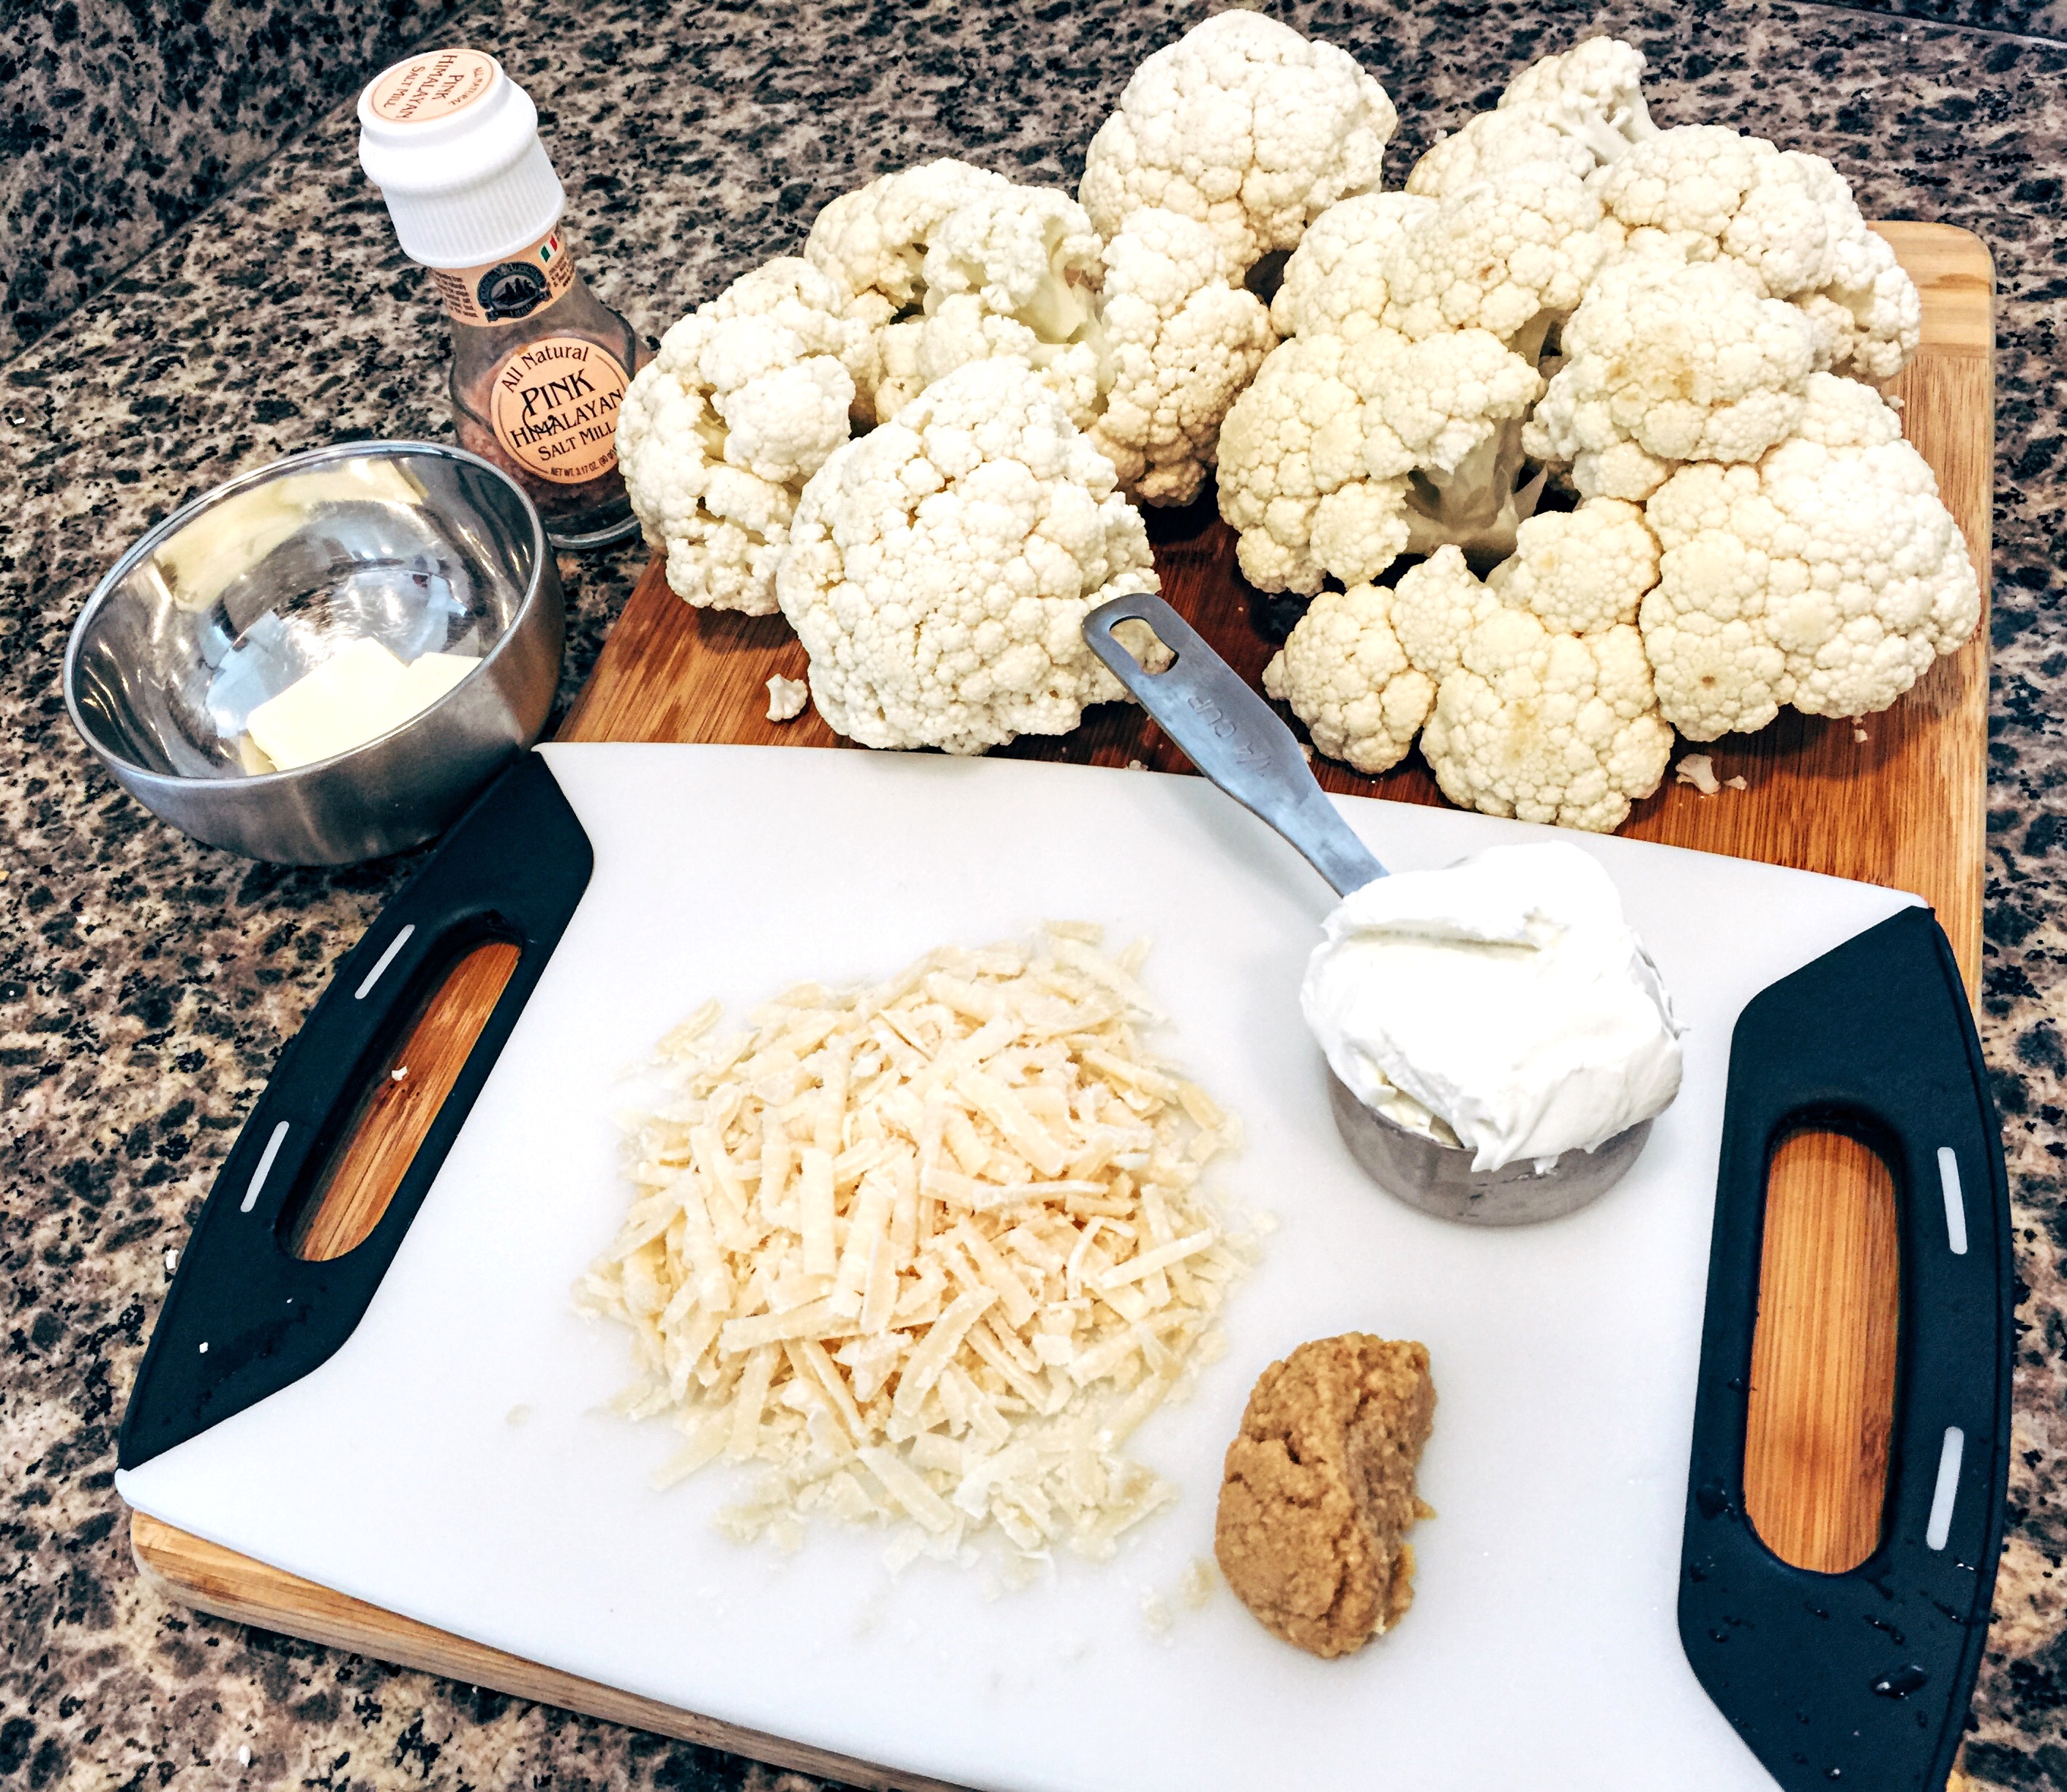 Cauliflower mash ingredients